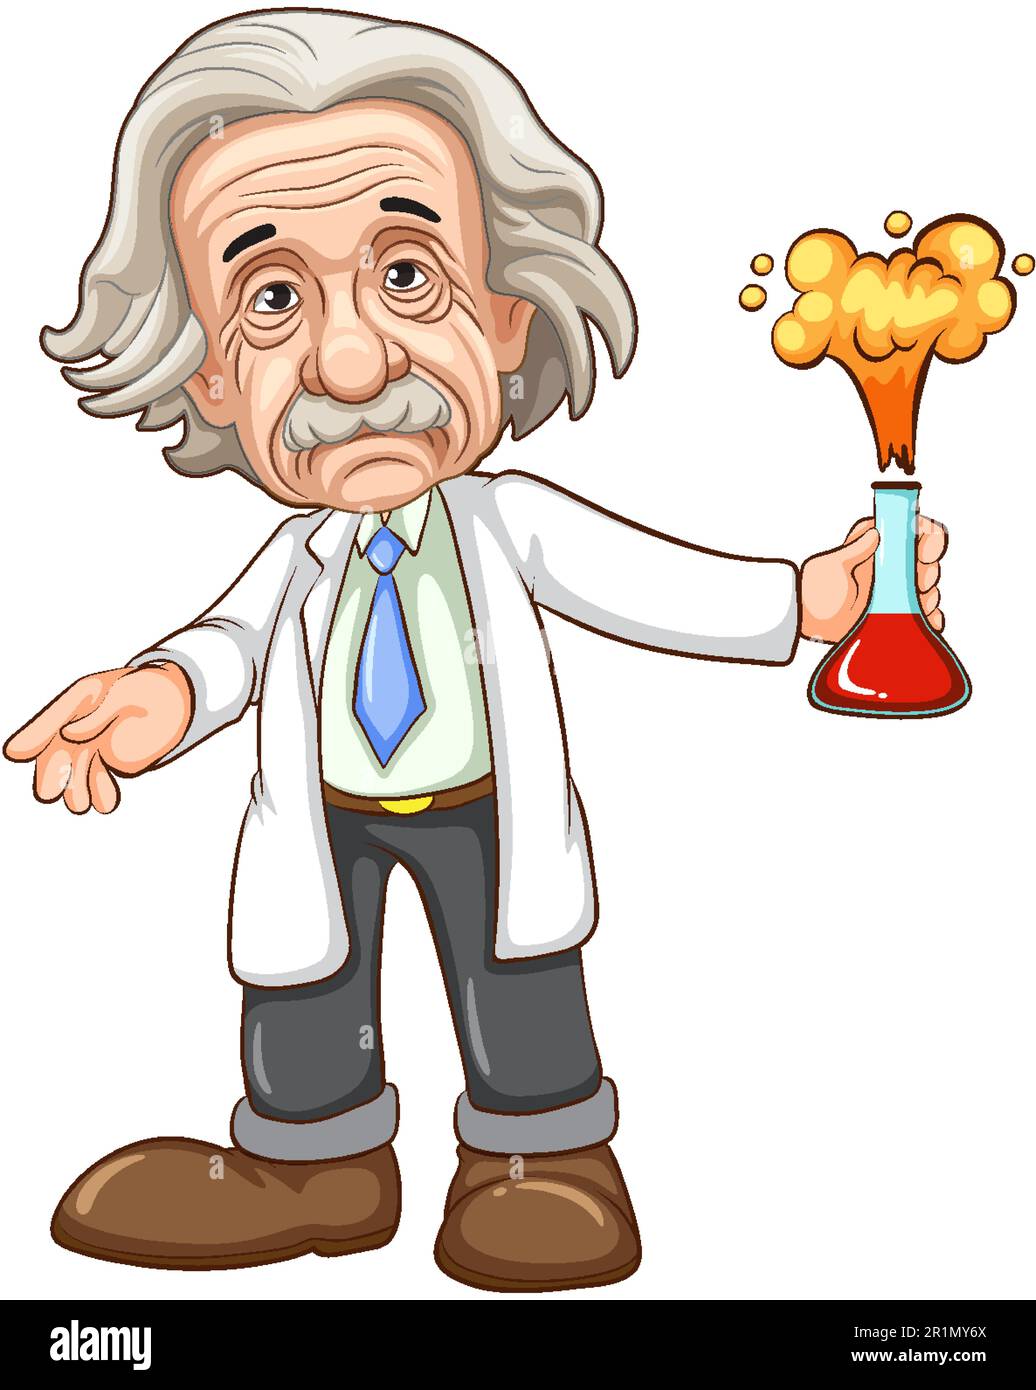 Albert Einstein cartoon character illustration Stock Vector